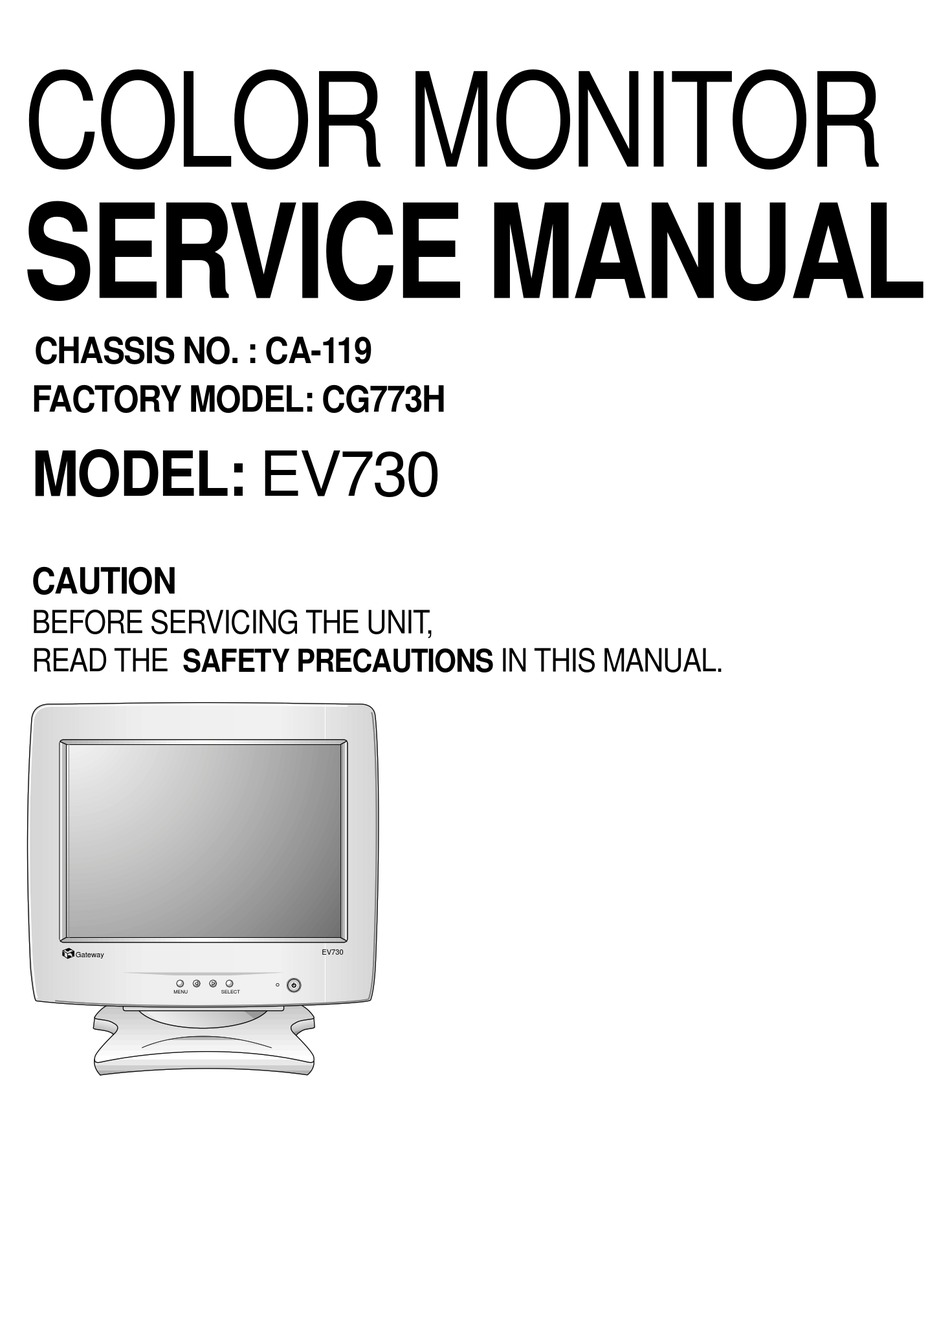 GATEWAY EV730 SERVICE MANUAL Pdf Download | ManualsLib